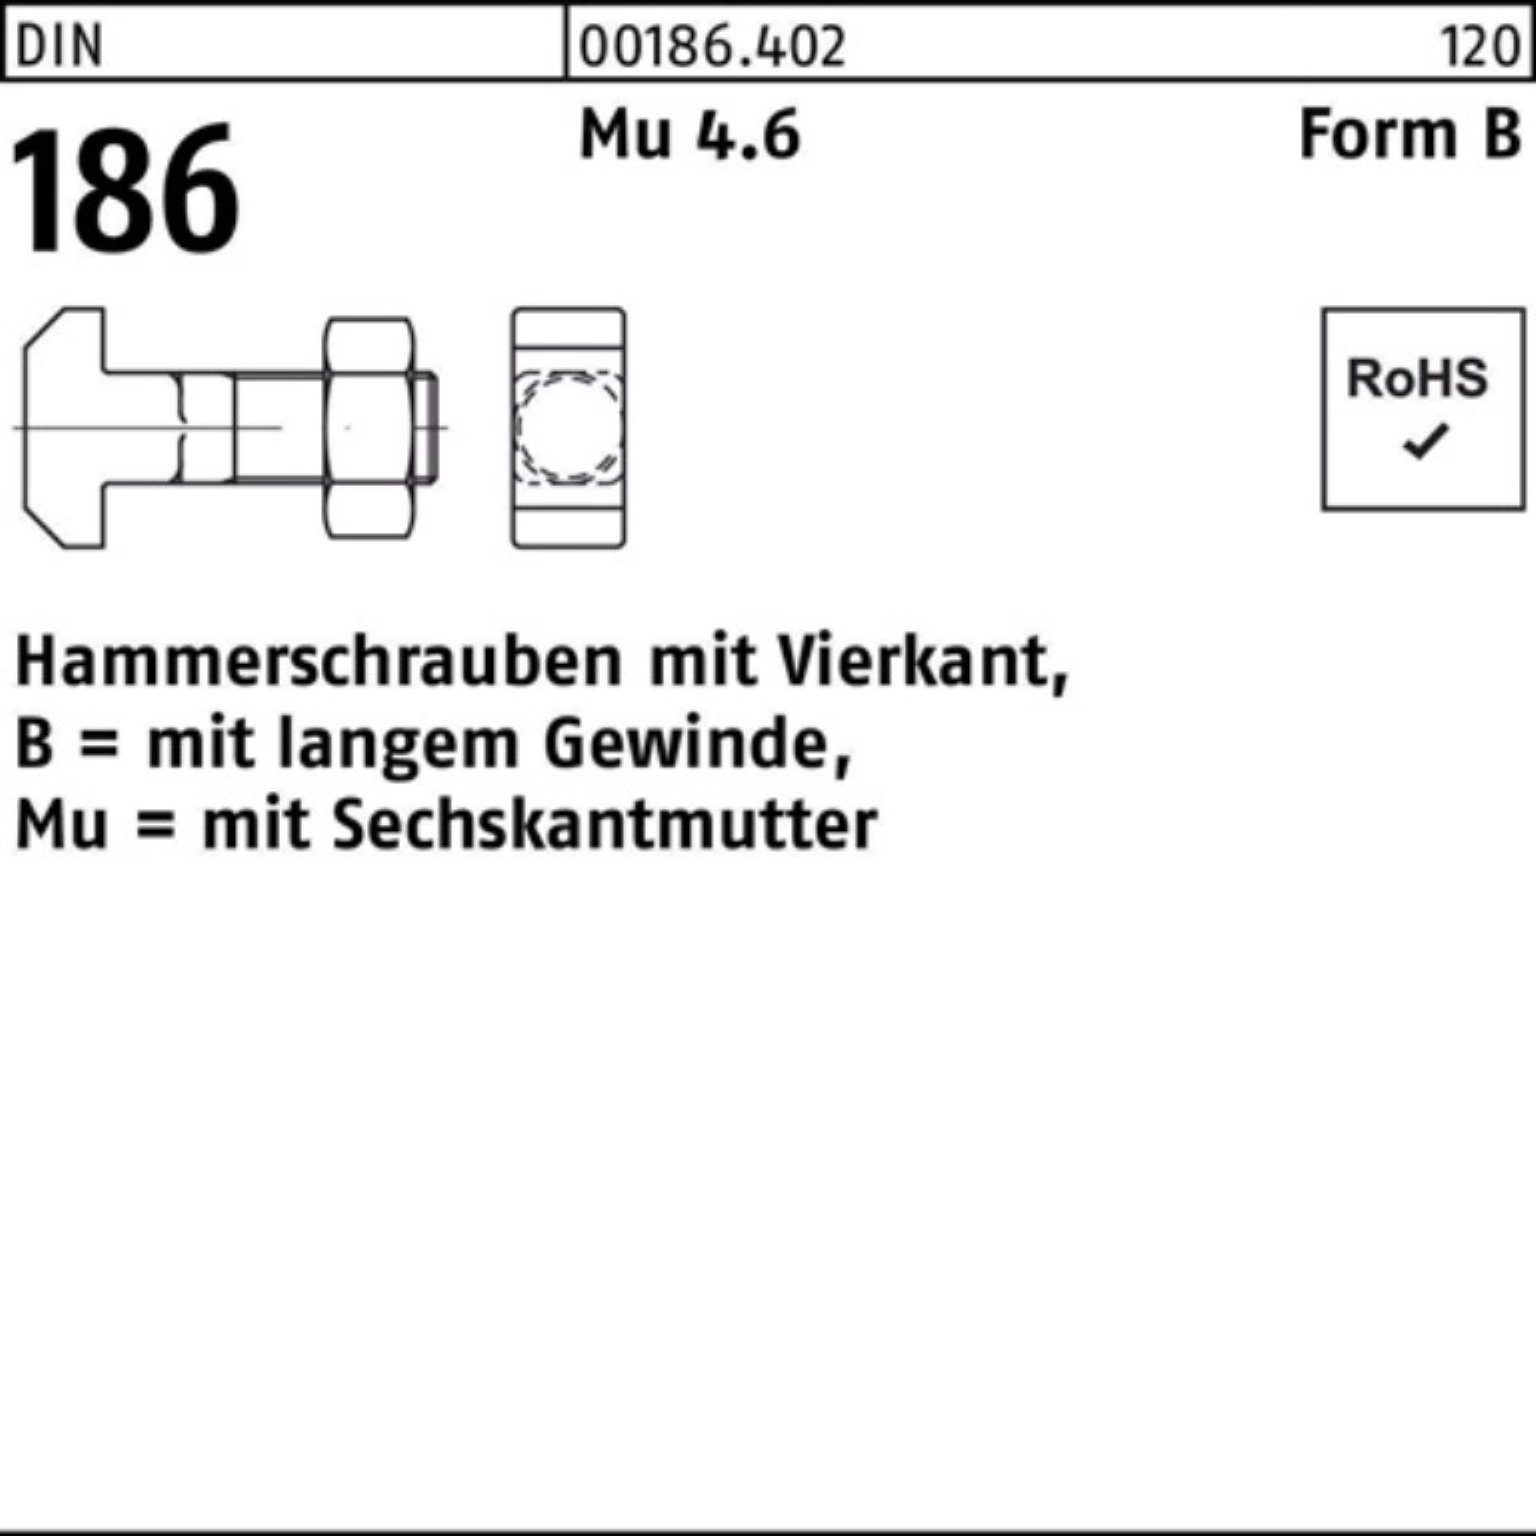 Reyher Schraube 100er Pack Hammerschraube DIN 186 FormB Vierkant 6-ktmutter BM 24x 200